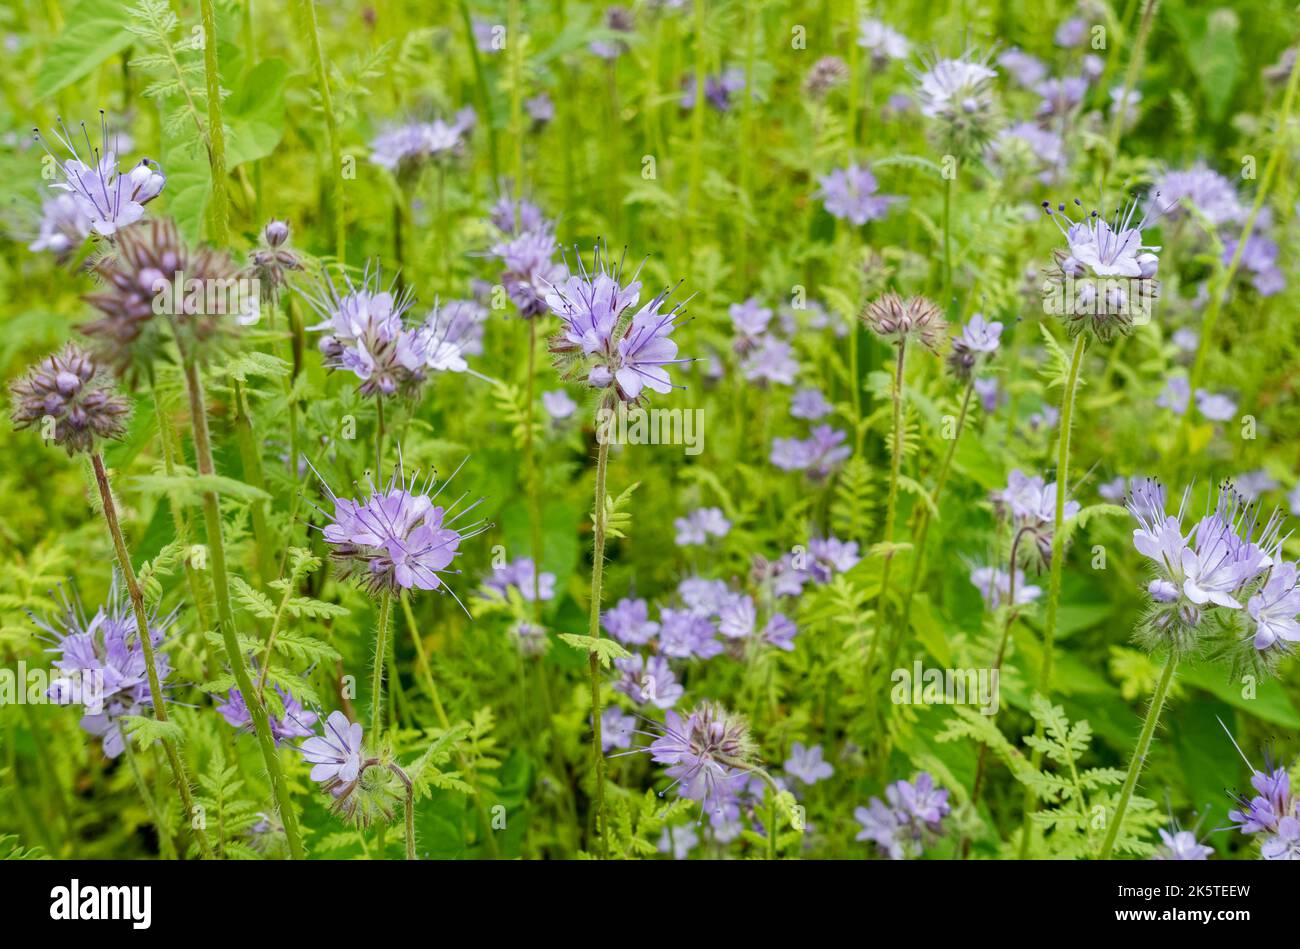 Nahaufnahme von violetten Phacelia tanacetifolia Blumen Blume blühende Pflanzen Pflanzen wachsen im Sommer in der Grenze England Vereinigtes Königreich Großbritannien Stockfoto